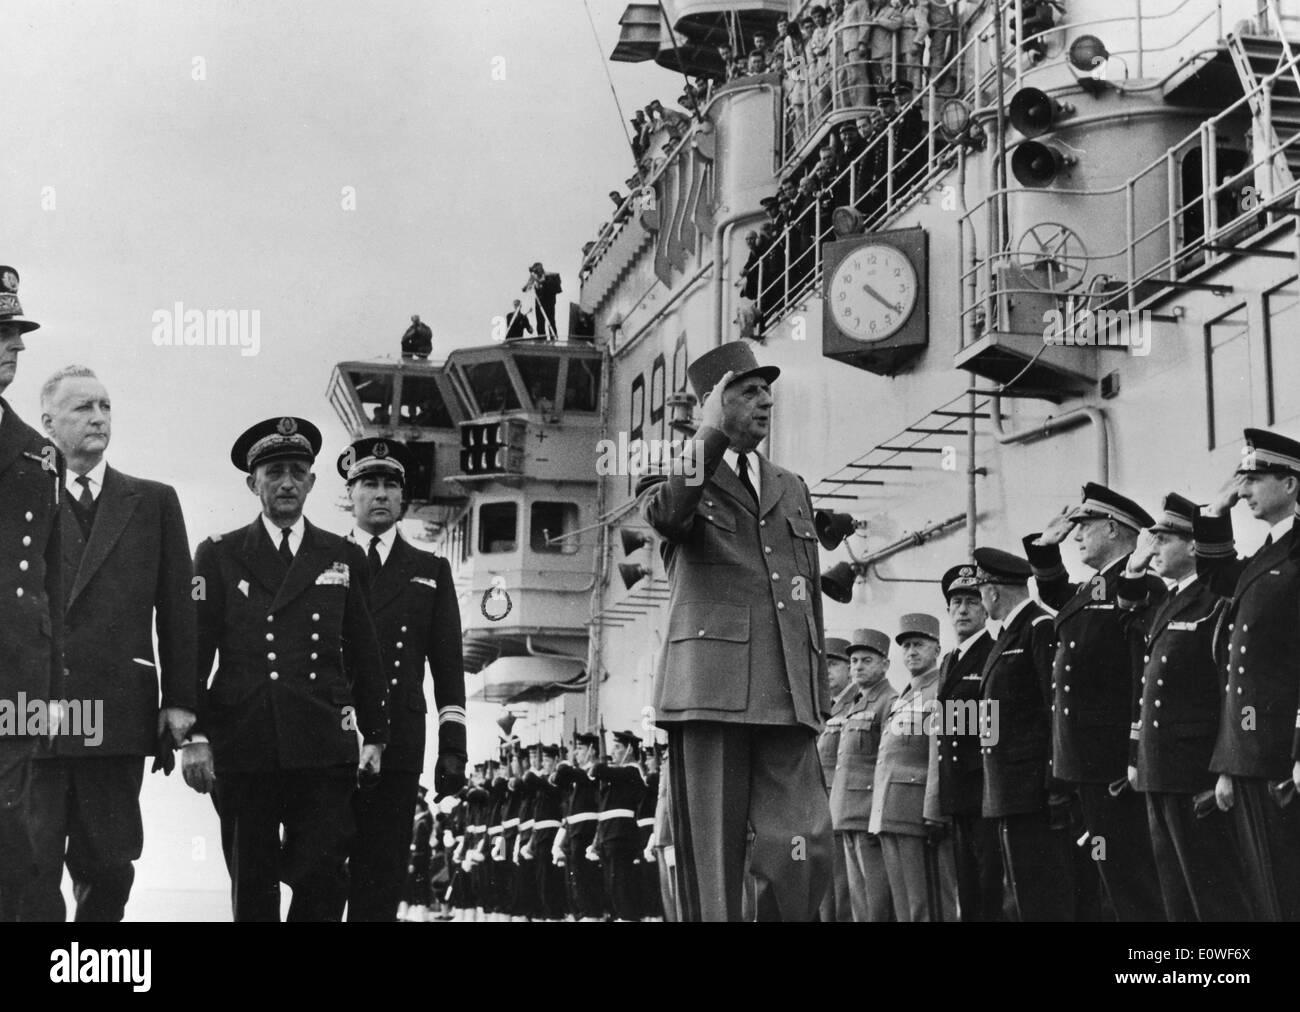 12 octobre, 1962 - Paris, France - Le Président de la France, CHARLES DE GAULLE passe les troupes de l 'Clemenceau' naval ship et porte-avions, dans les quais le long de la mer Méditerranée. L'accompagnent sont le premier ministre Pierre Messmer et l'amiral laine. Banque D'Images